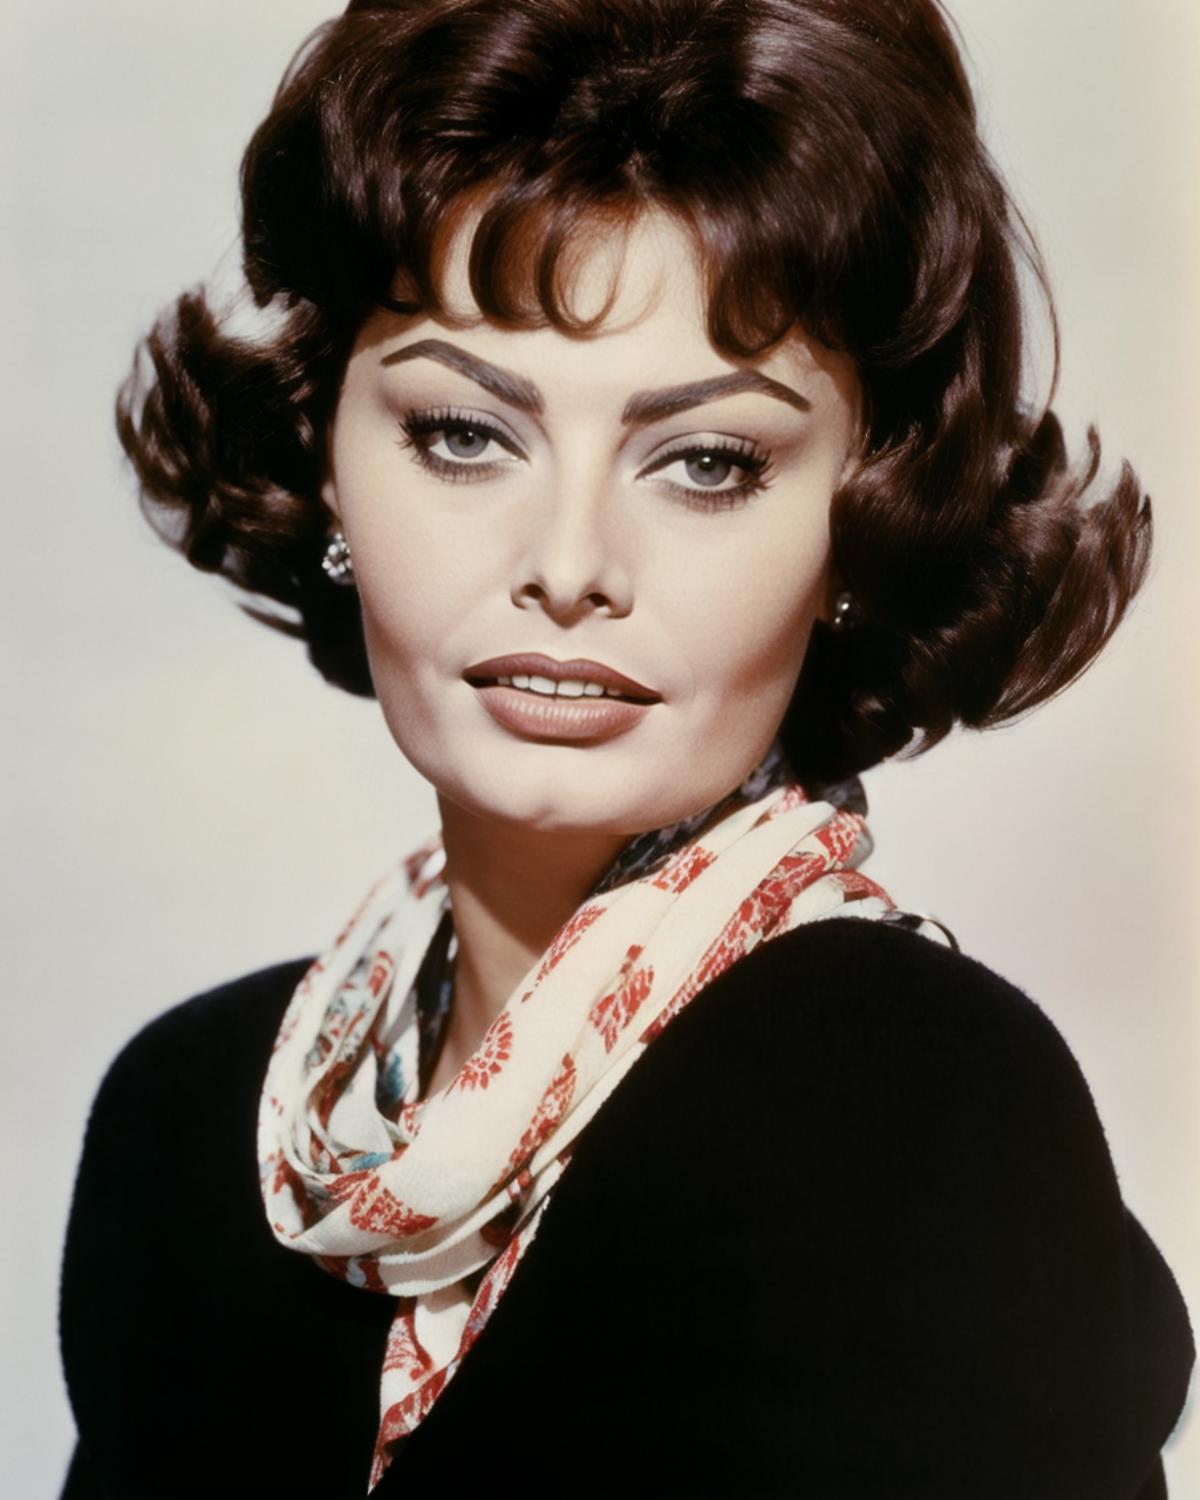 Sophia Loren image by radosen